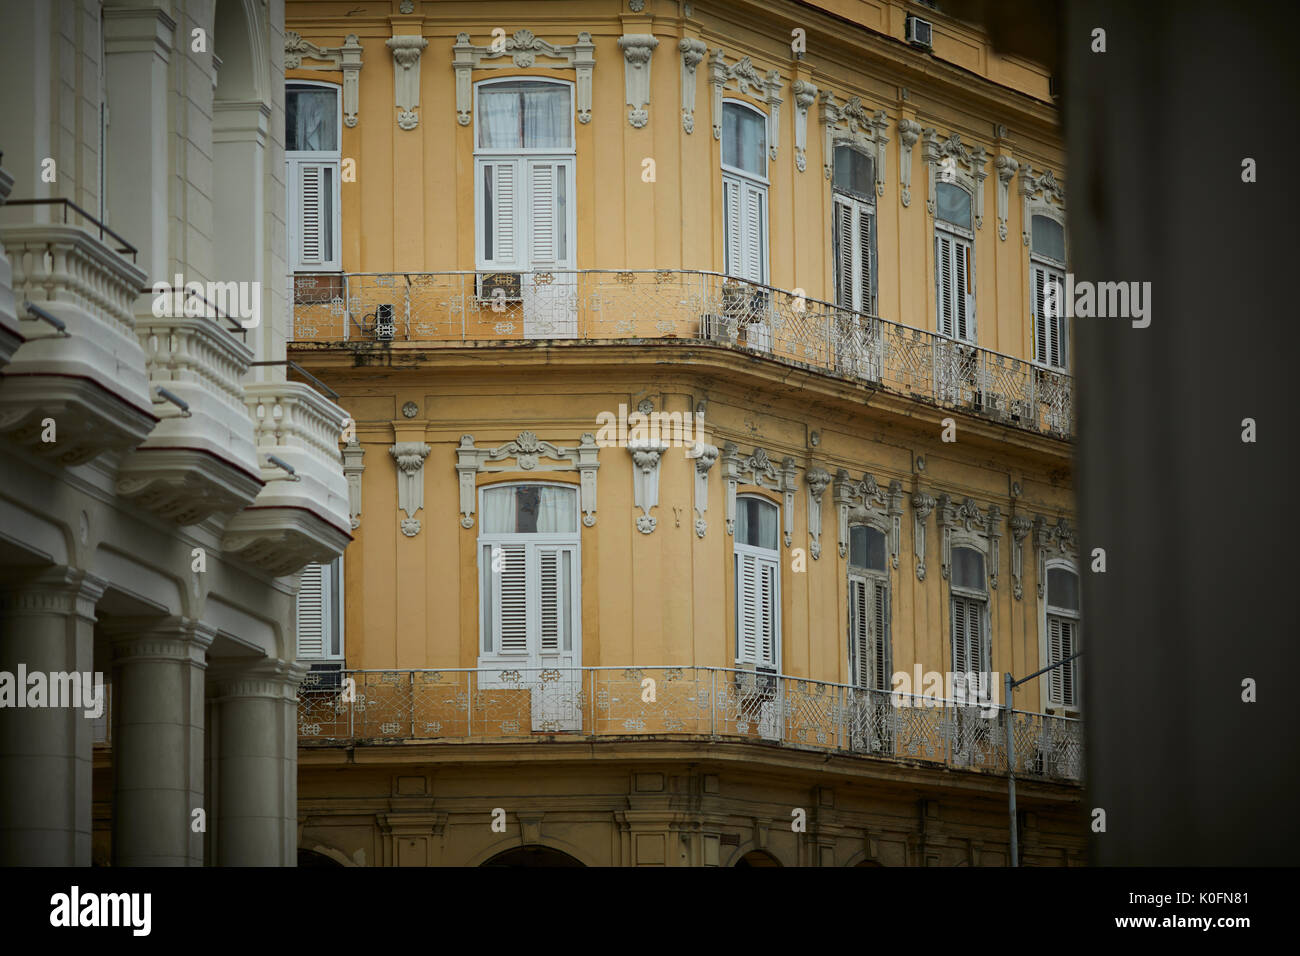 Cuban, cuba, Capital, Havana narrow street with apartments with balcony Stock Photo